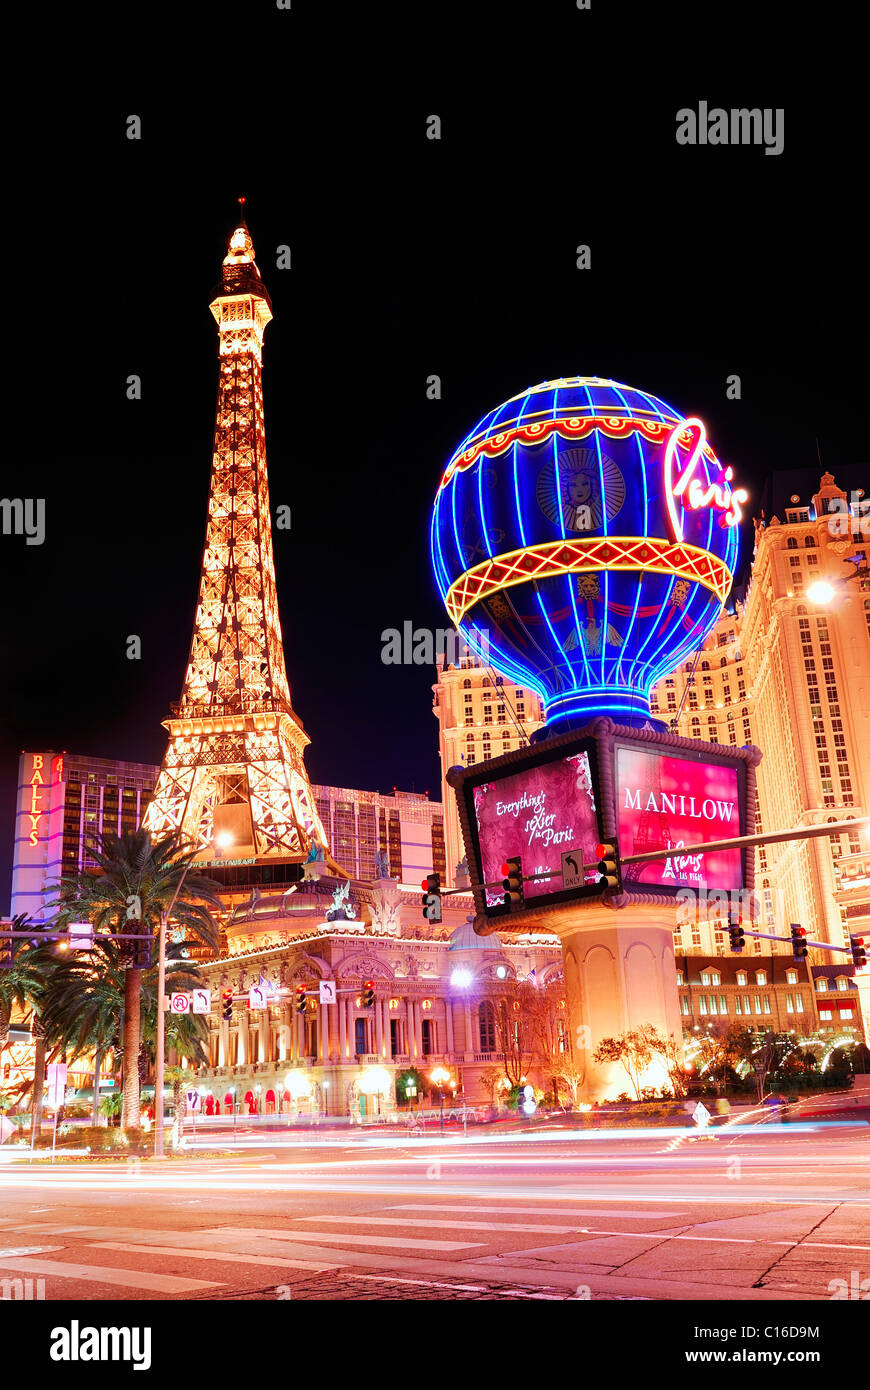 Paris Las Vegas Hotel & Casino - VegasChanges